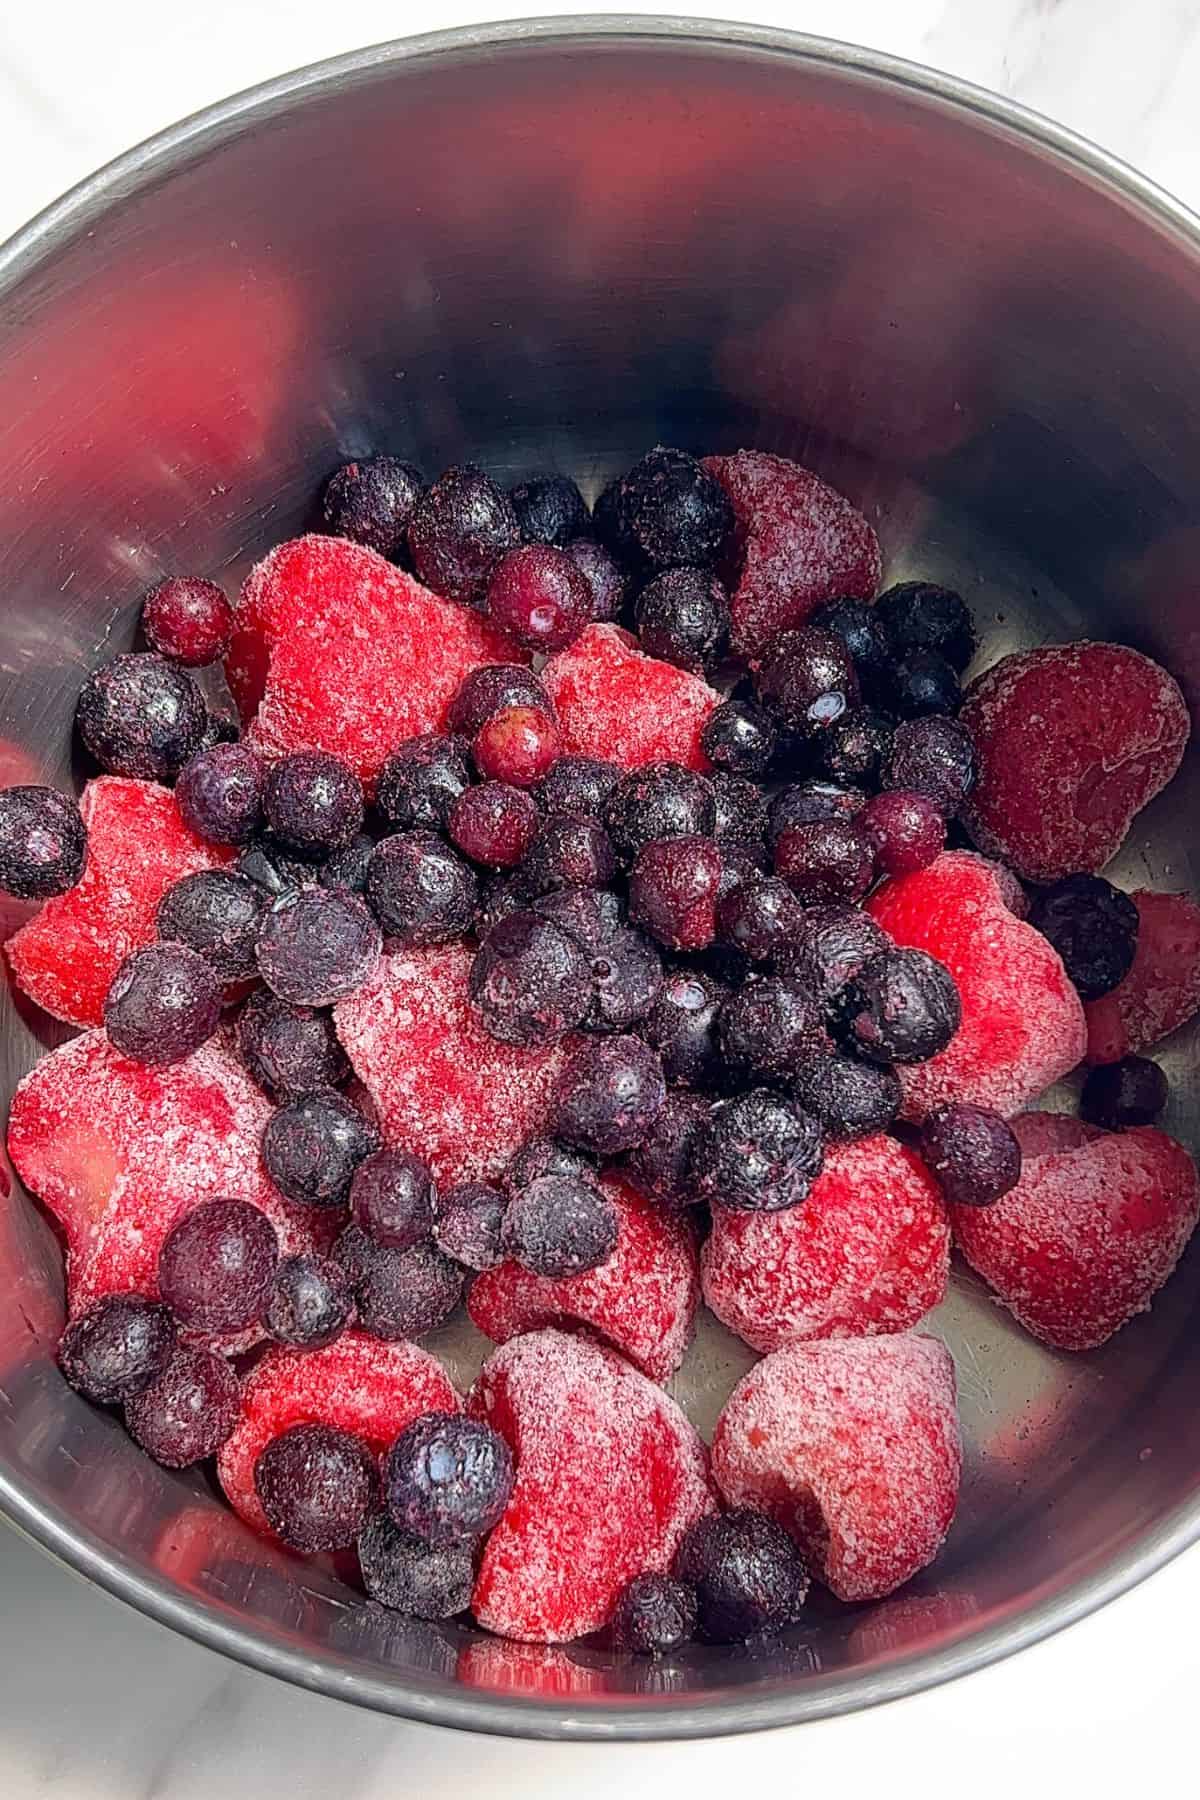 Frozen berries in a saucepan.